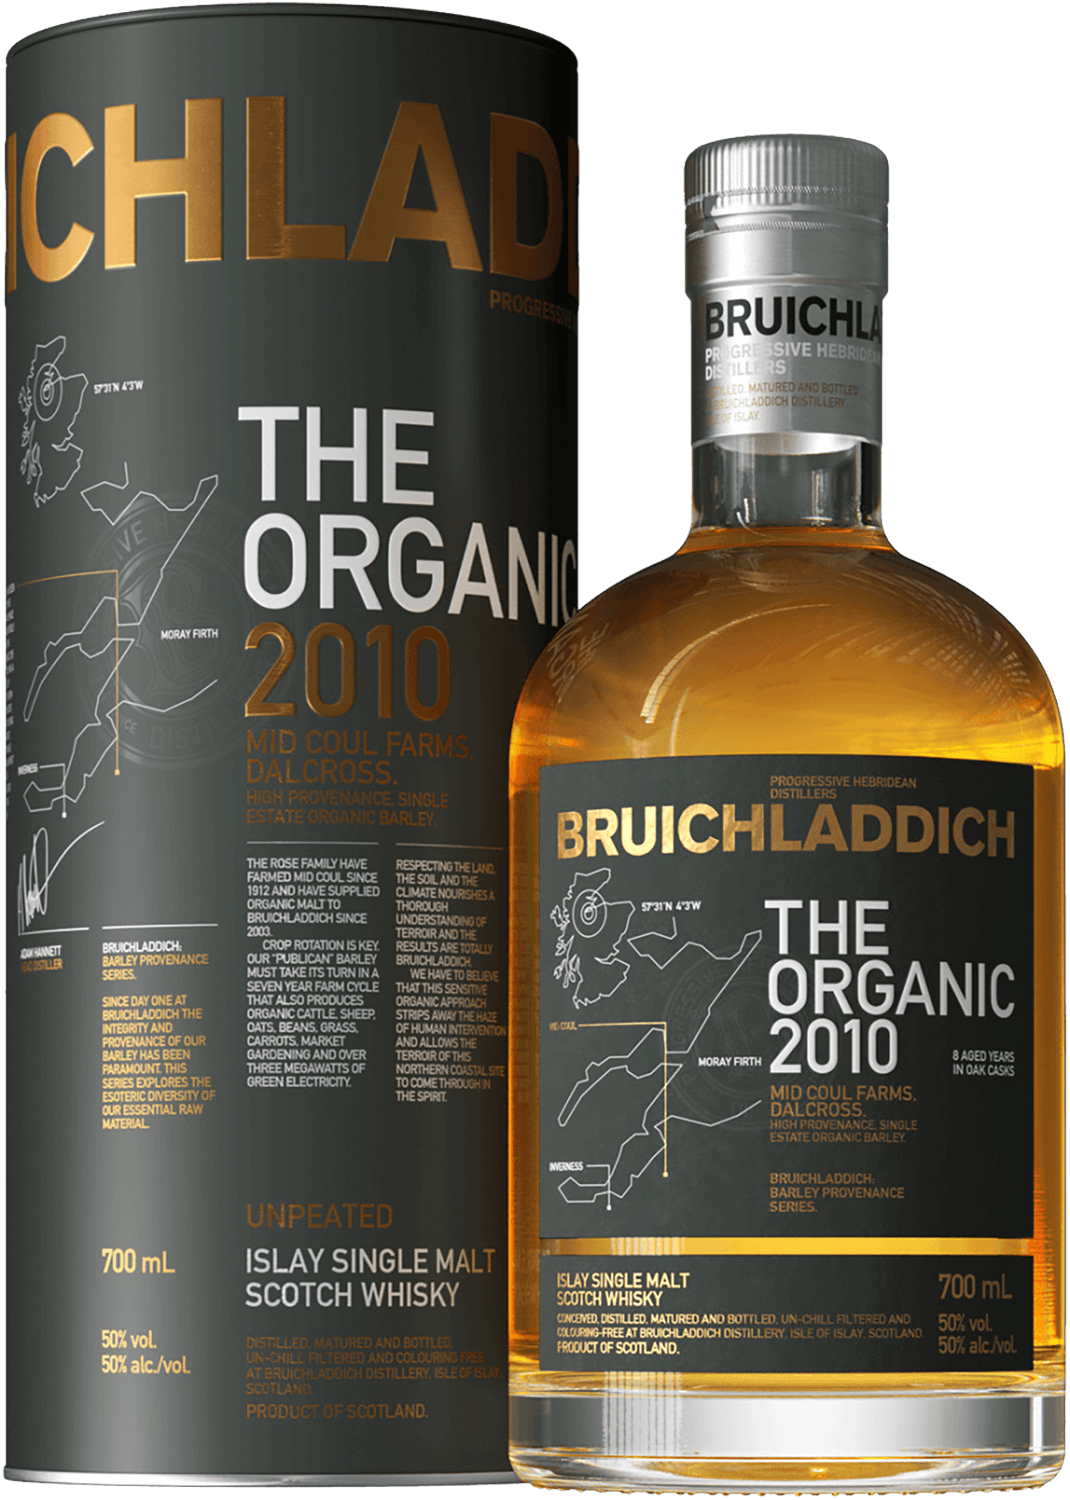 Bruichladdich Organic Islay single malt scotch whisky (gift box) bowmore islay single malt scotch whisky 12 y o gift box